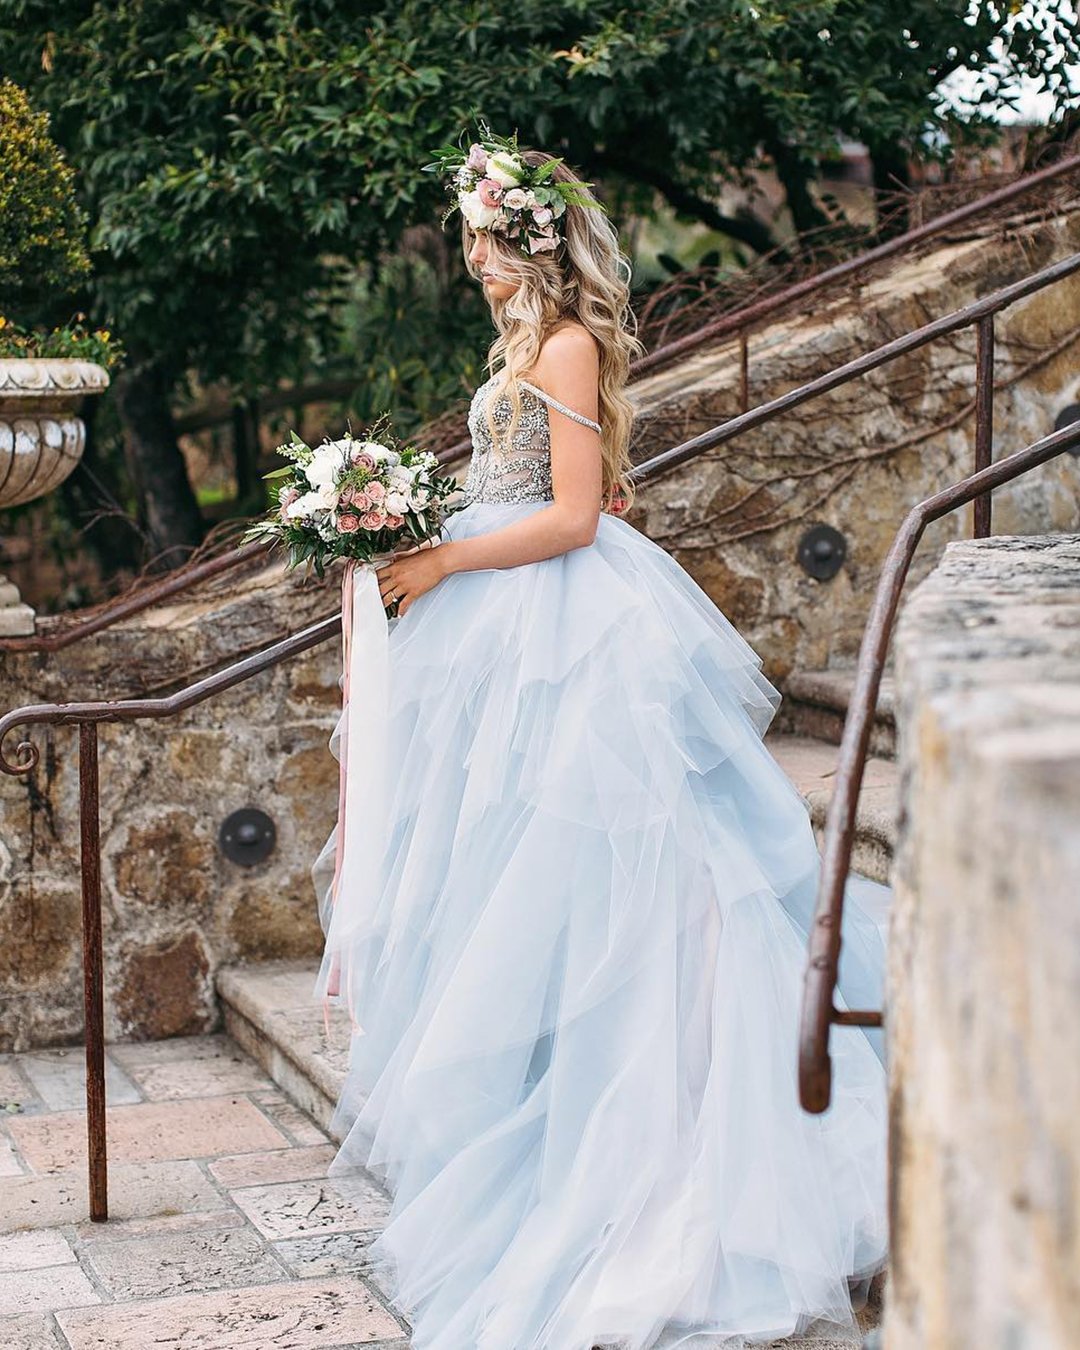 blue wedding dresses ball gown ruffled skirt sequins top